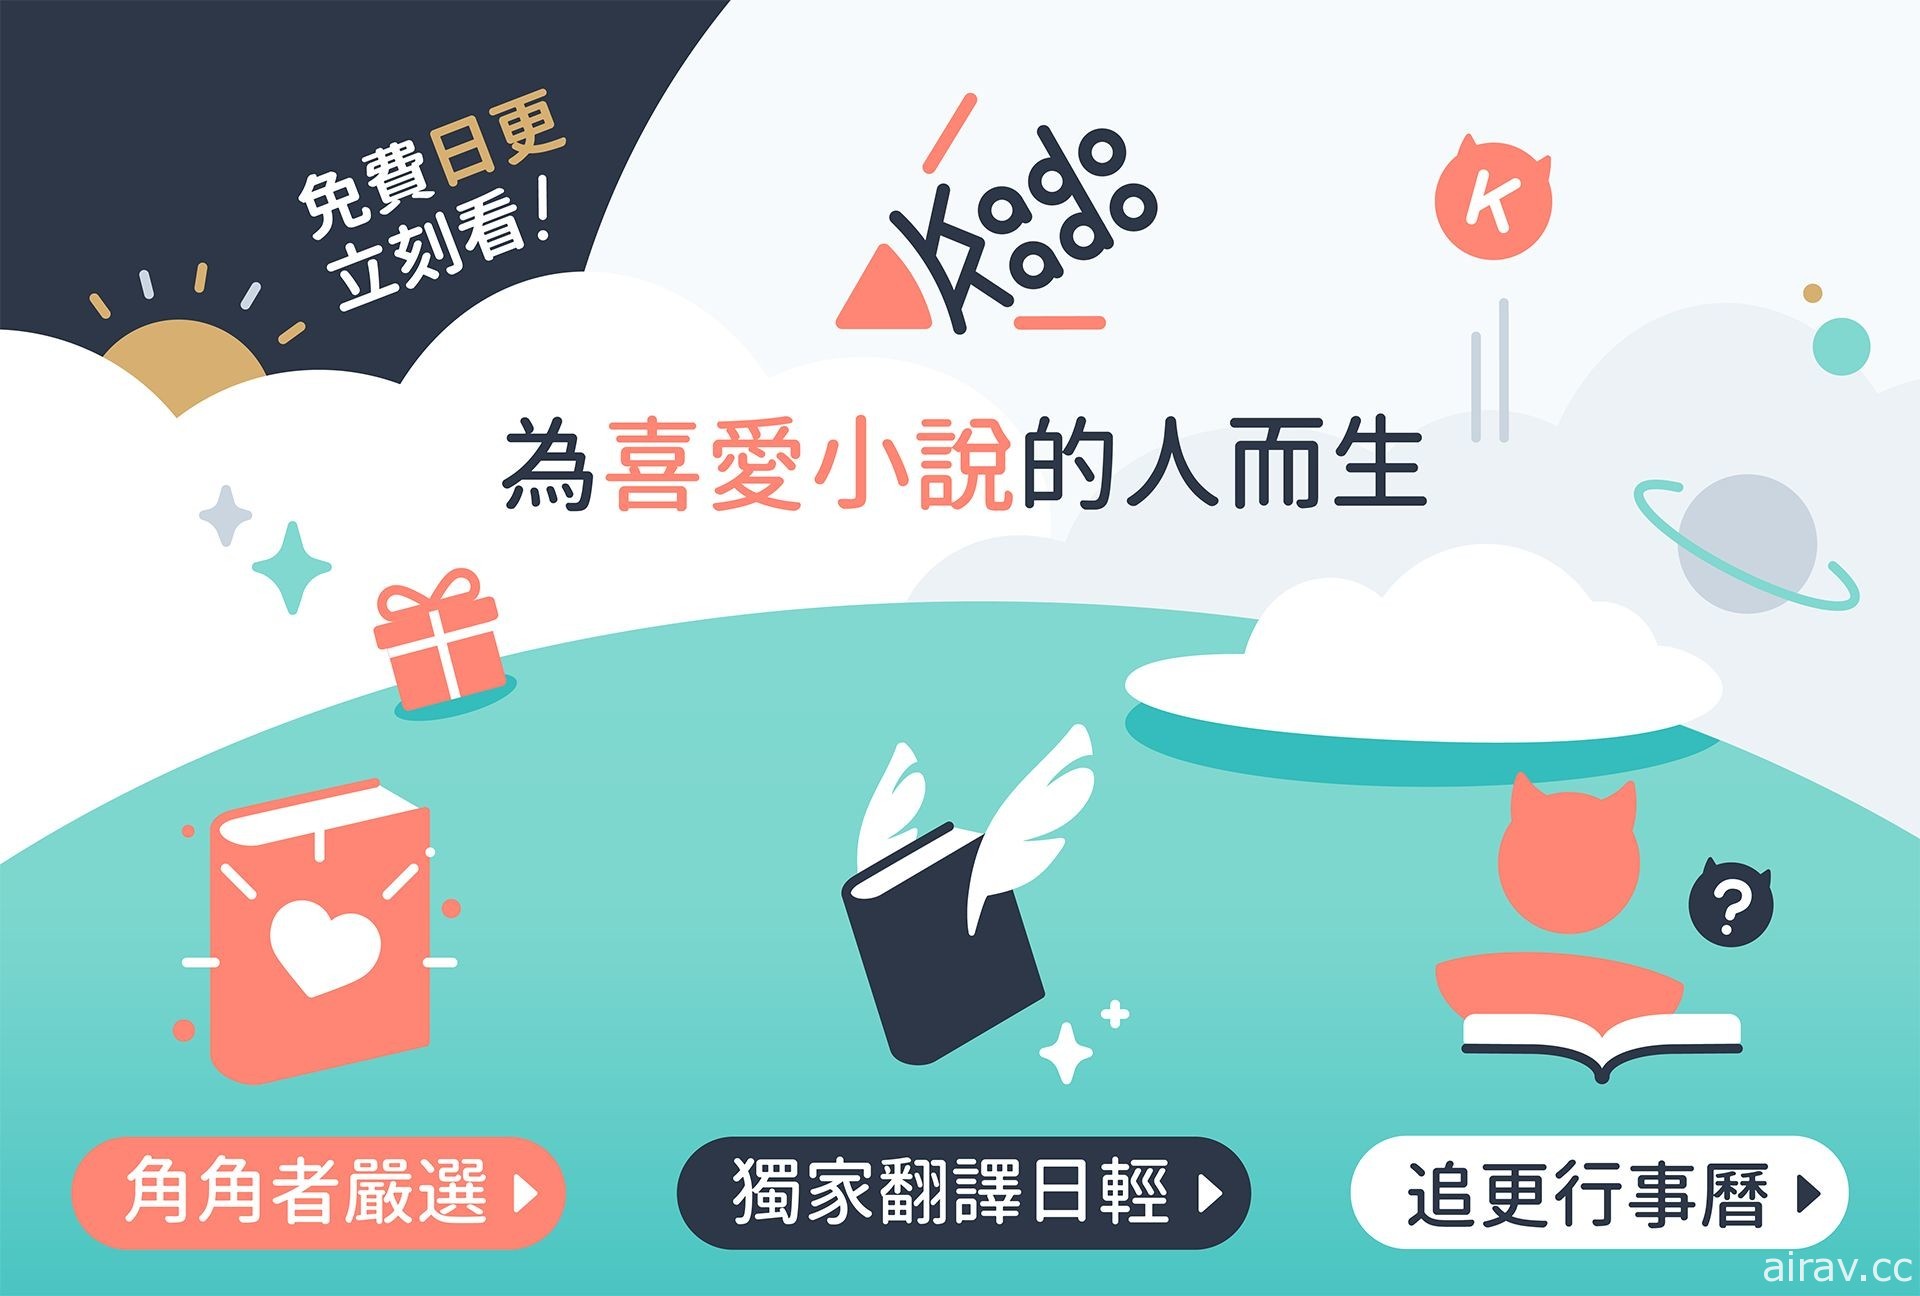 台湾角川宣布推出小说连载平台“KadoKado 角角者”汇集台日众多作品